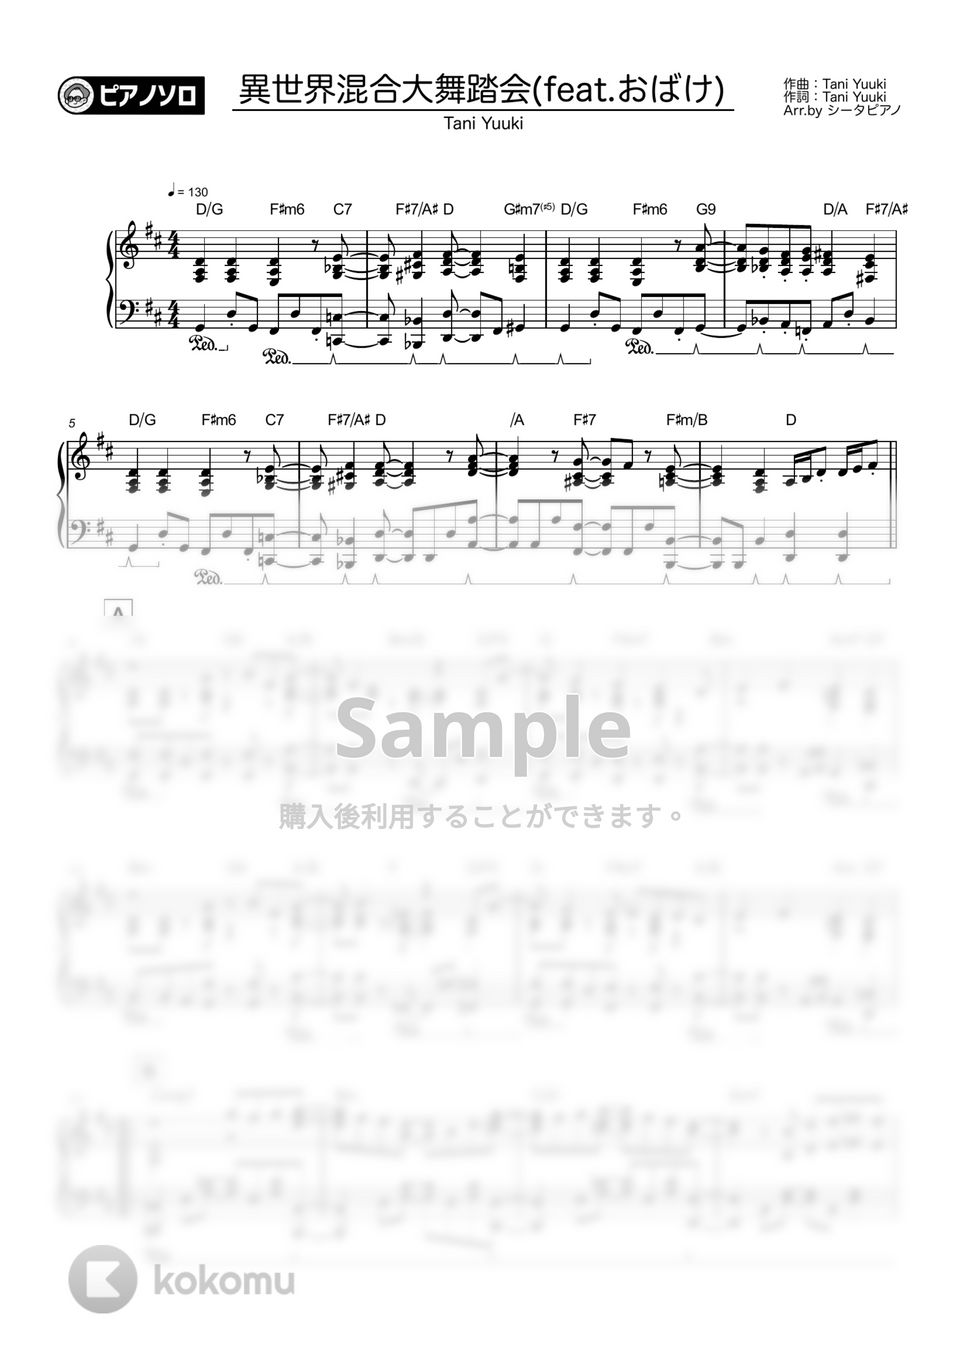 星野源 - 異世界混合大舞踏会(feat.おばけ) by シータピアノ